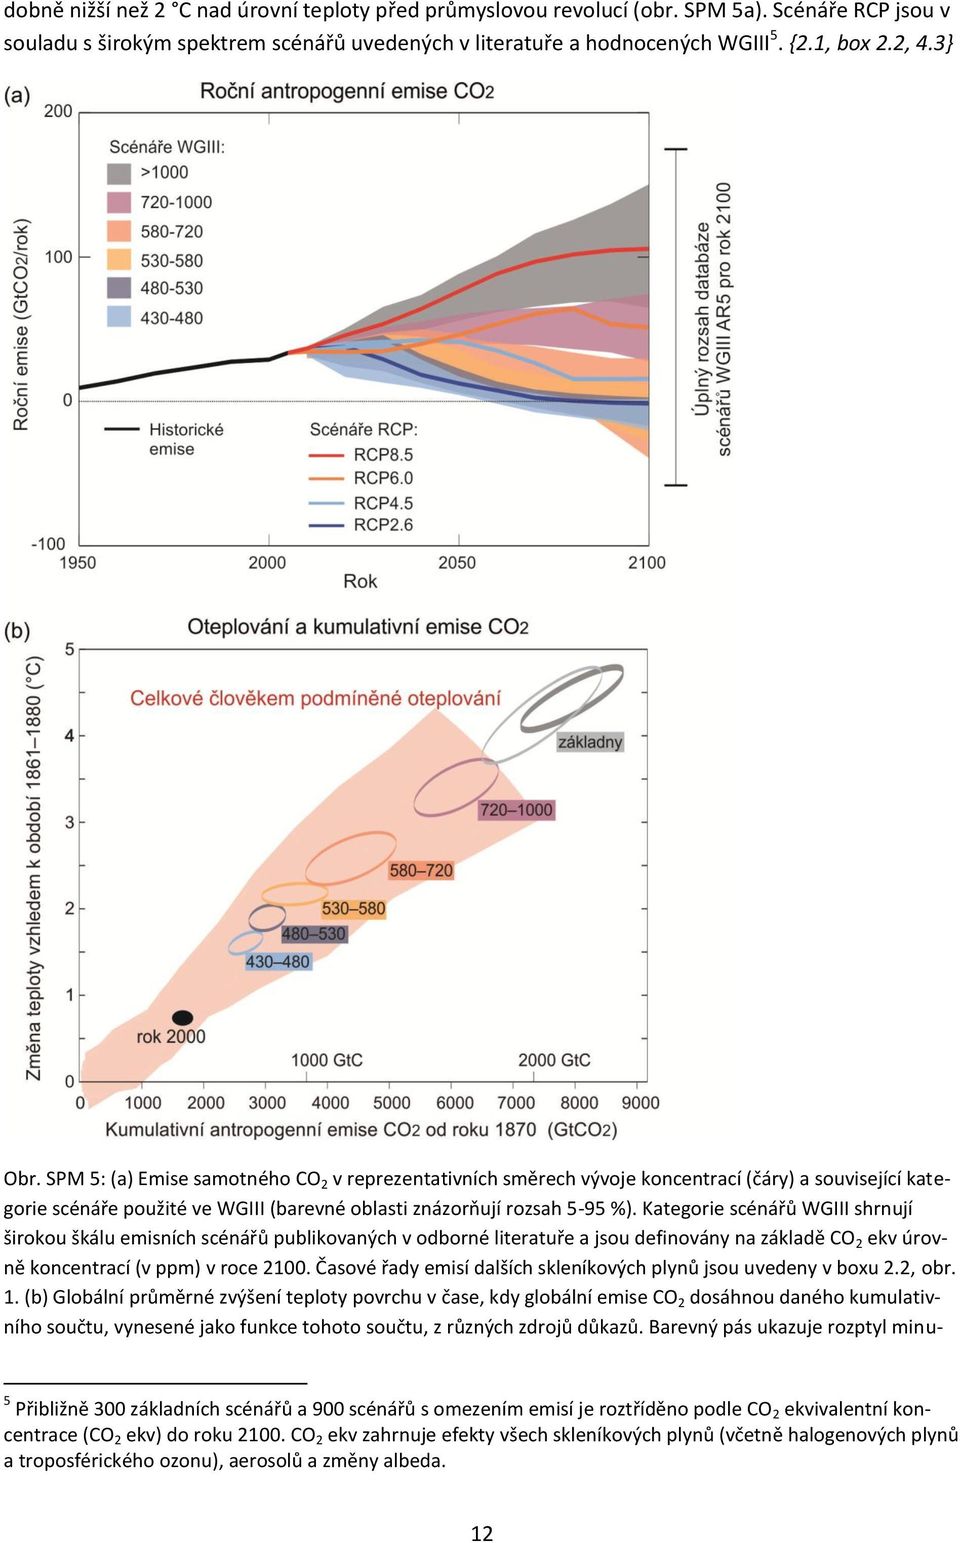 Kategorie scénářů WGIII shrnují širokou škálu emisních scénářů publikovaných v odborné literatuře a jsou definovány na základě CO 2 ekv úrovně koncentrací (v ppm) v roce 2100.